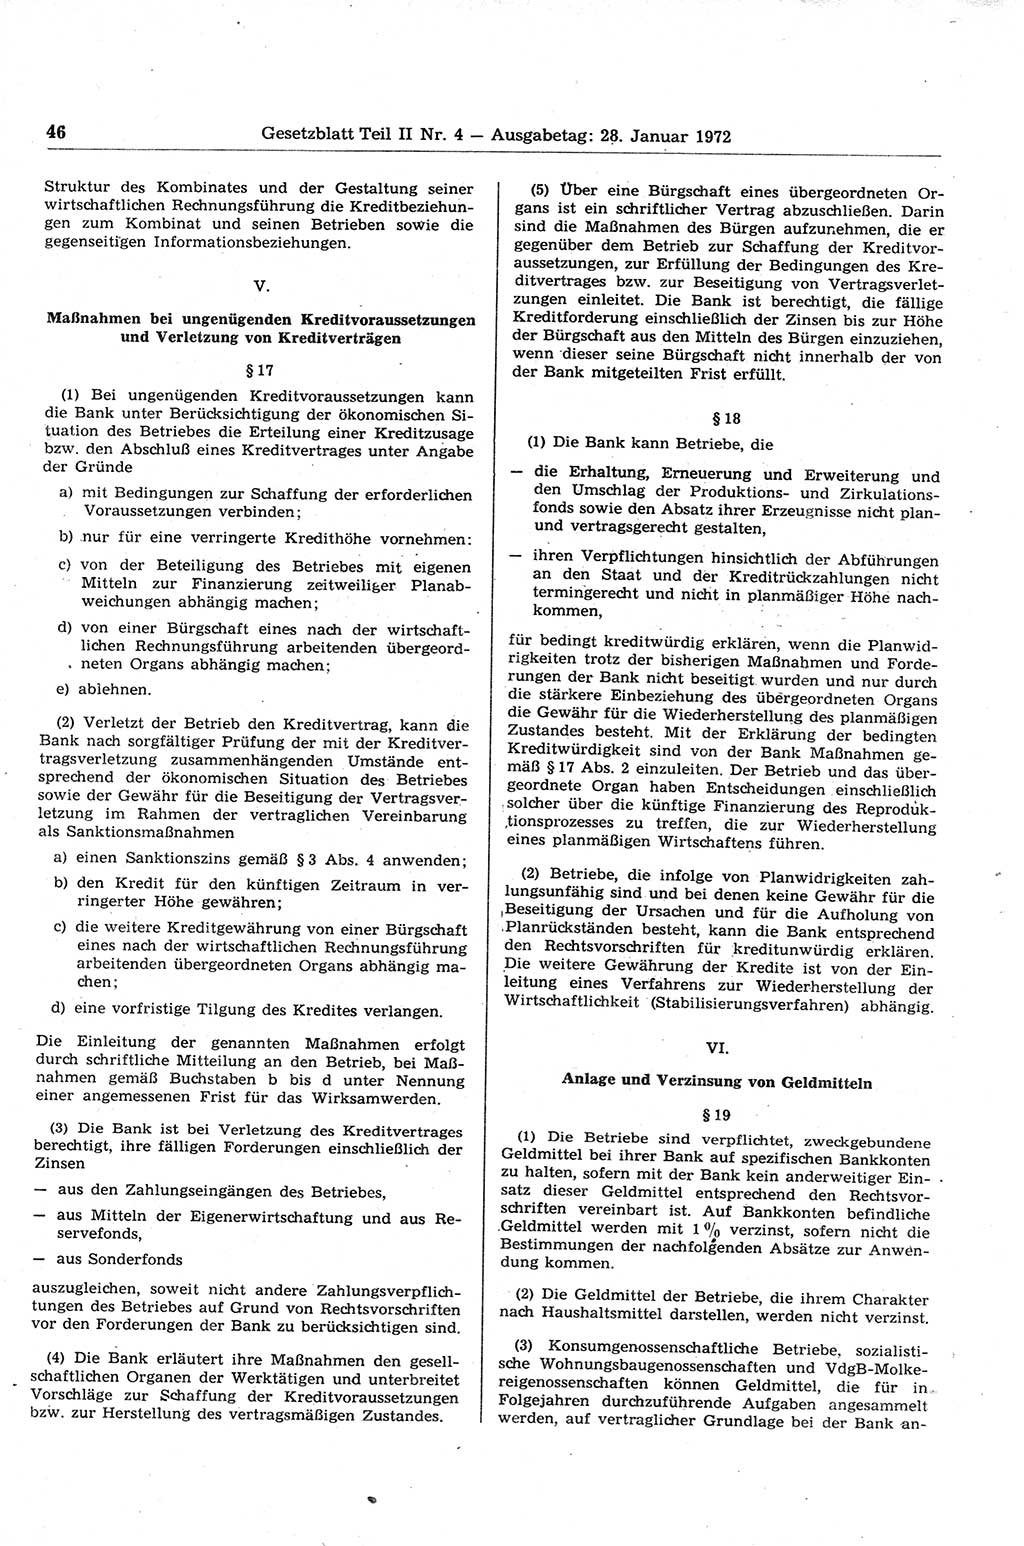 Gesetzblatt (GBl.) der Deutschen Demokratischen Republik (DDR) Teil ⅠⅠ 1972, Seite 46 (GBl. DDR ⅠⅠ 1972, S. 46)